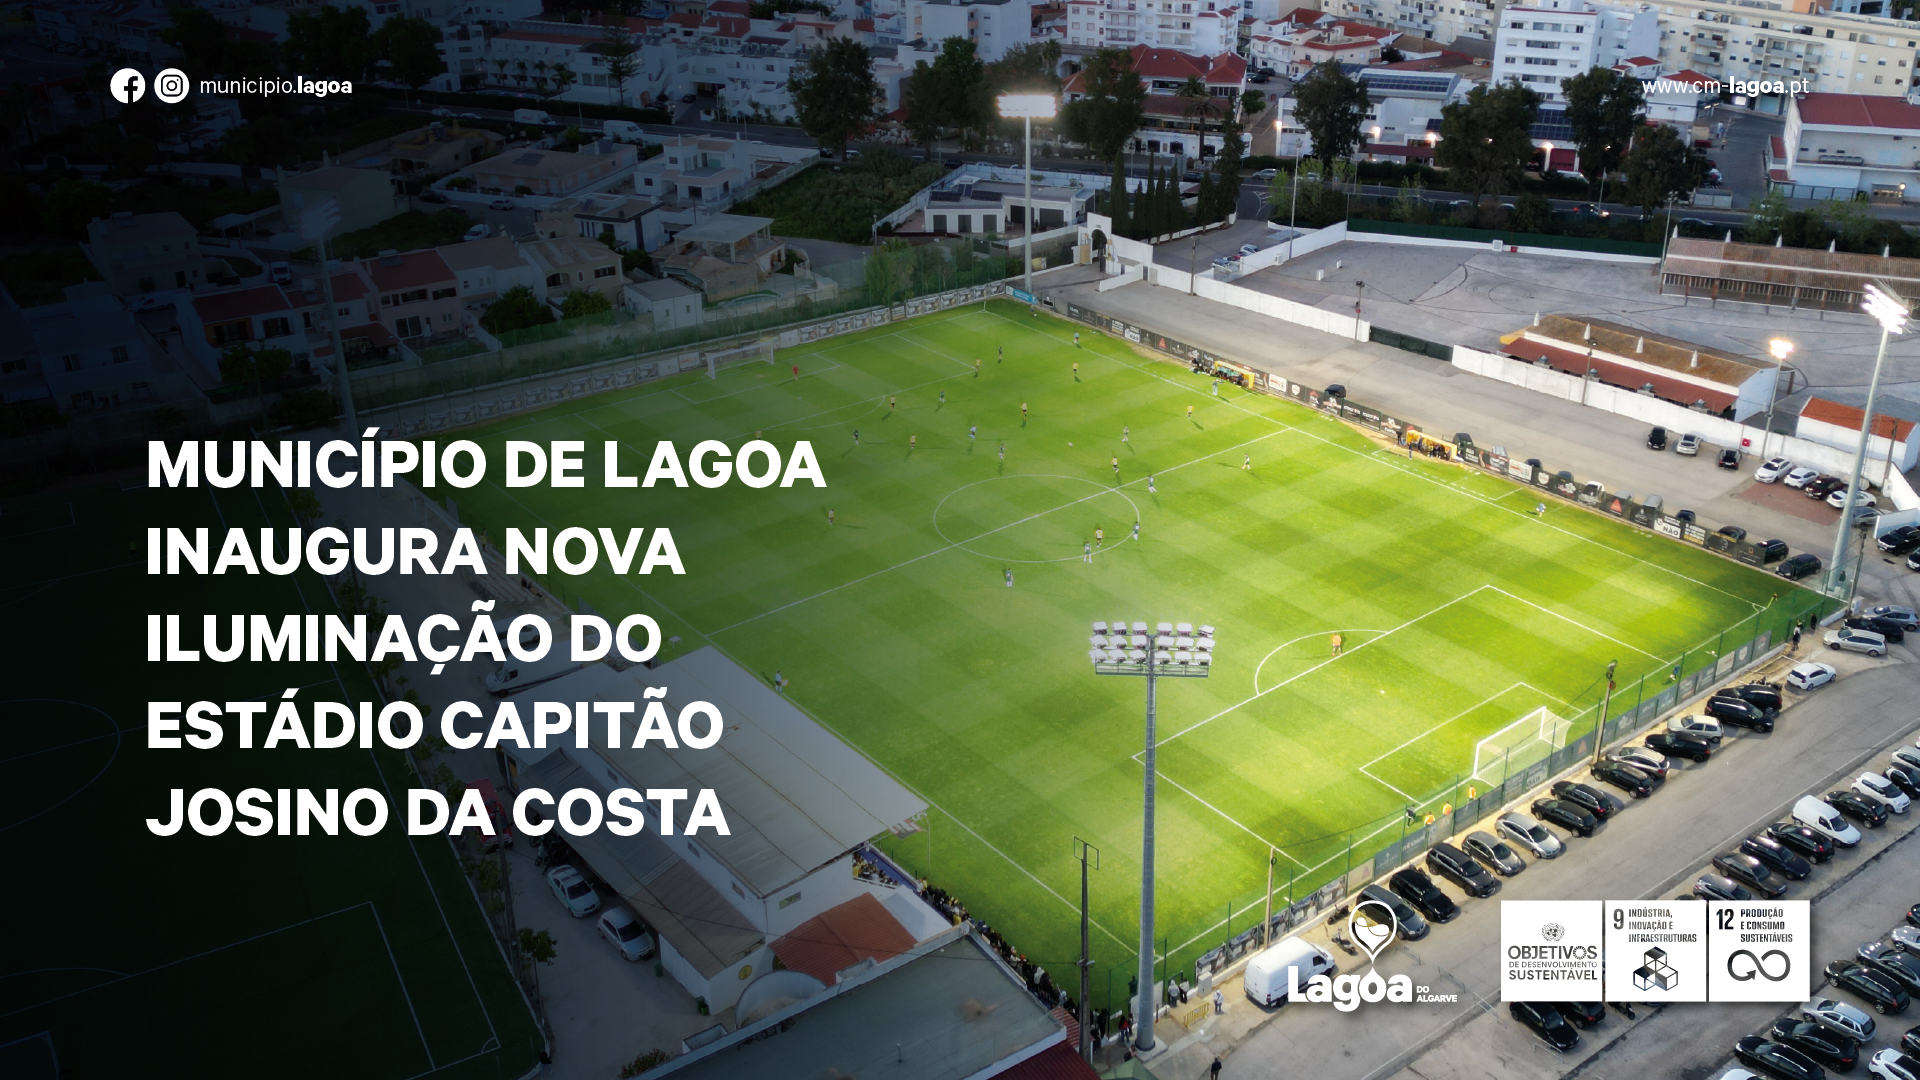 Município de Lagoa inaugura nova iluminação do Estádio Capitão Josino da Costa